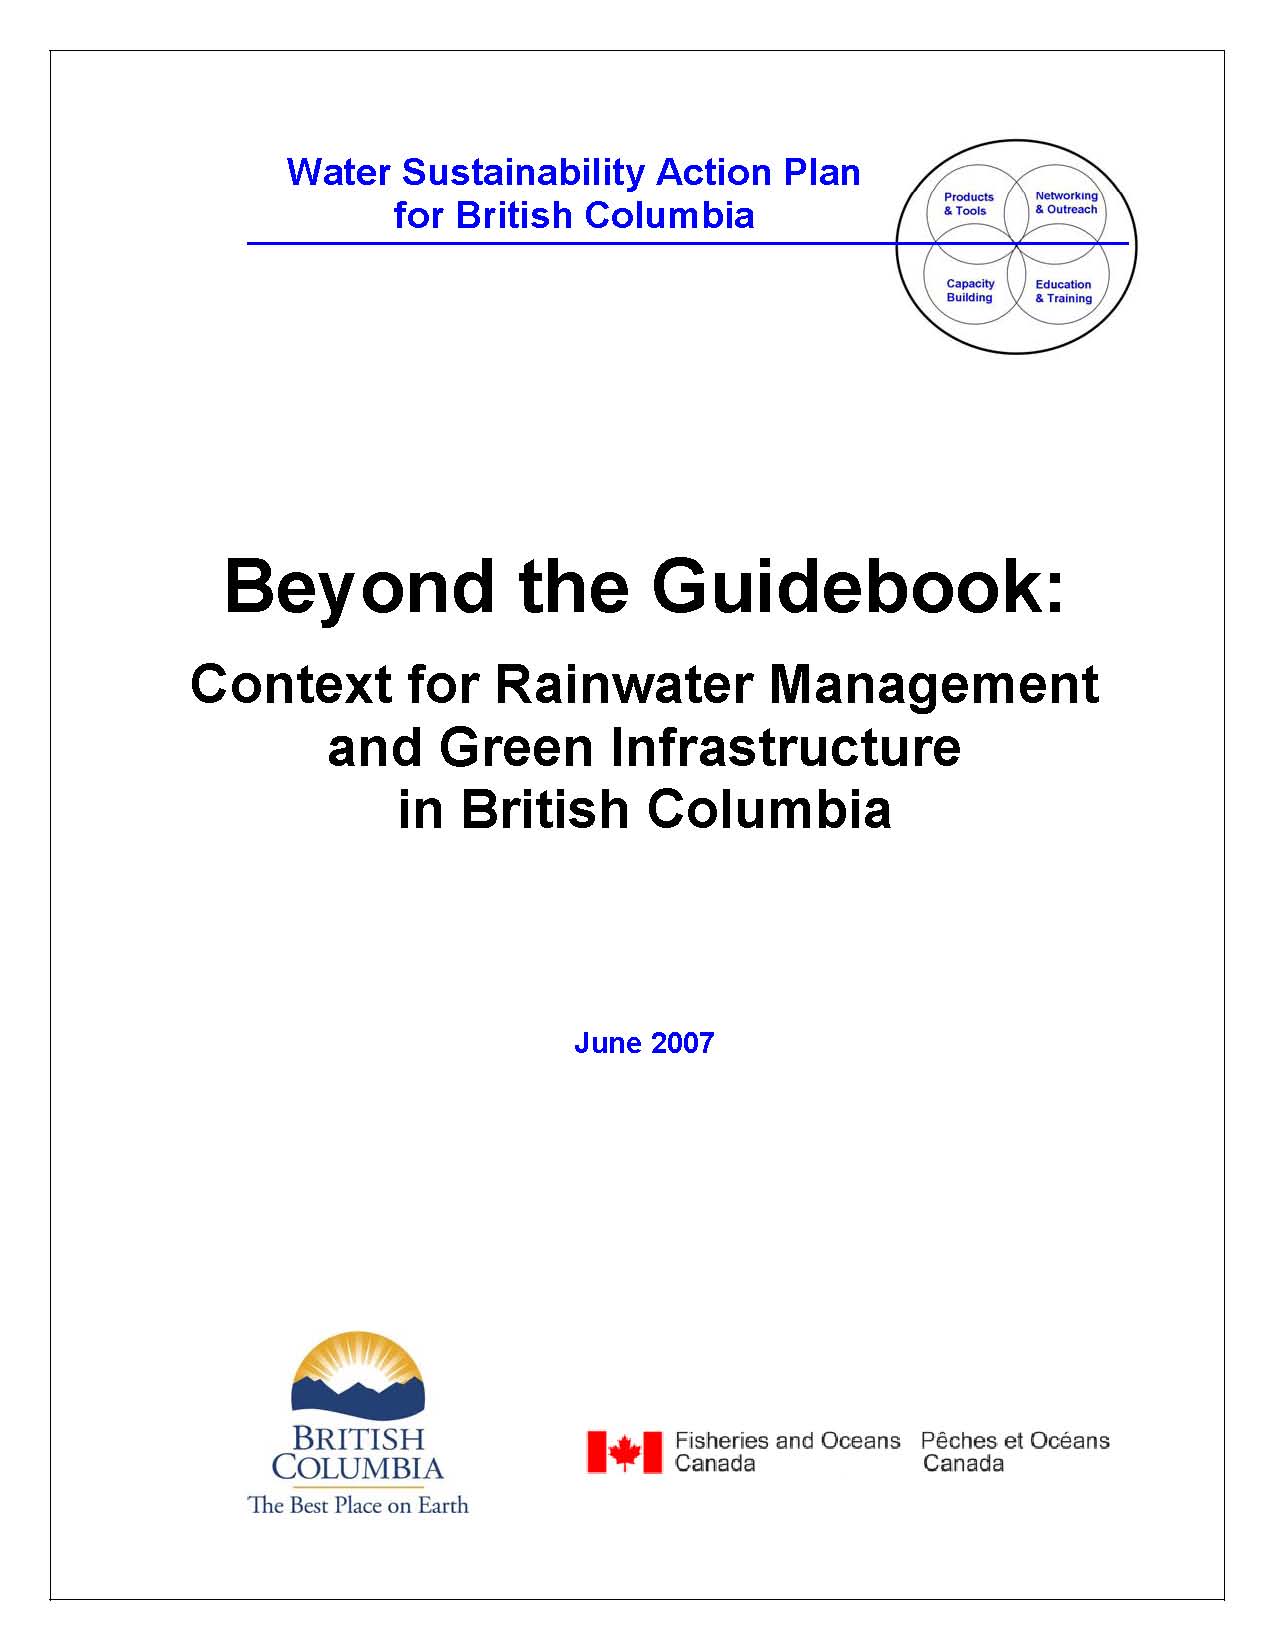 Beyond the Guidebook 2007